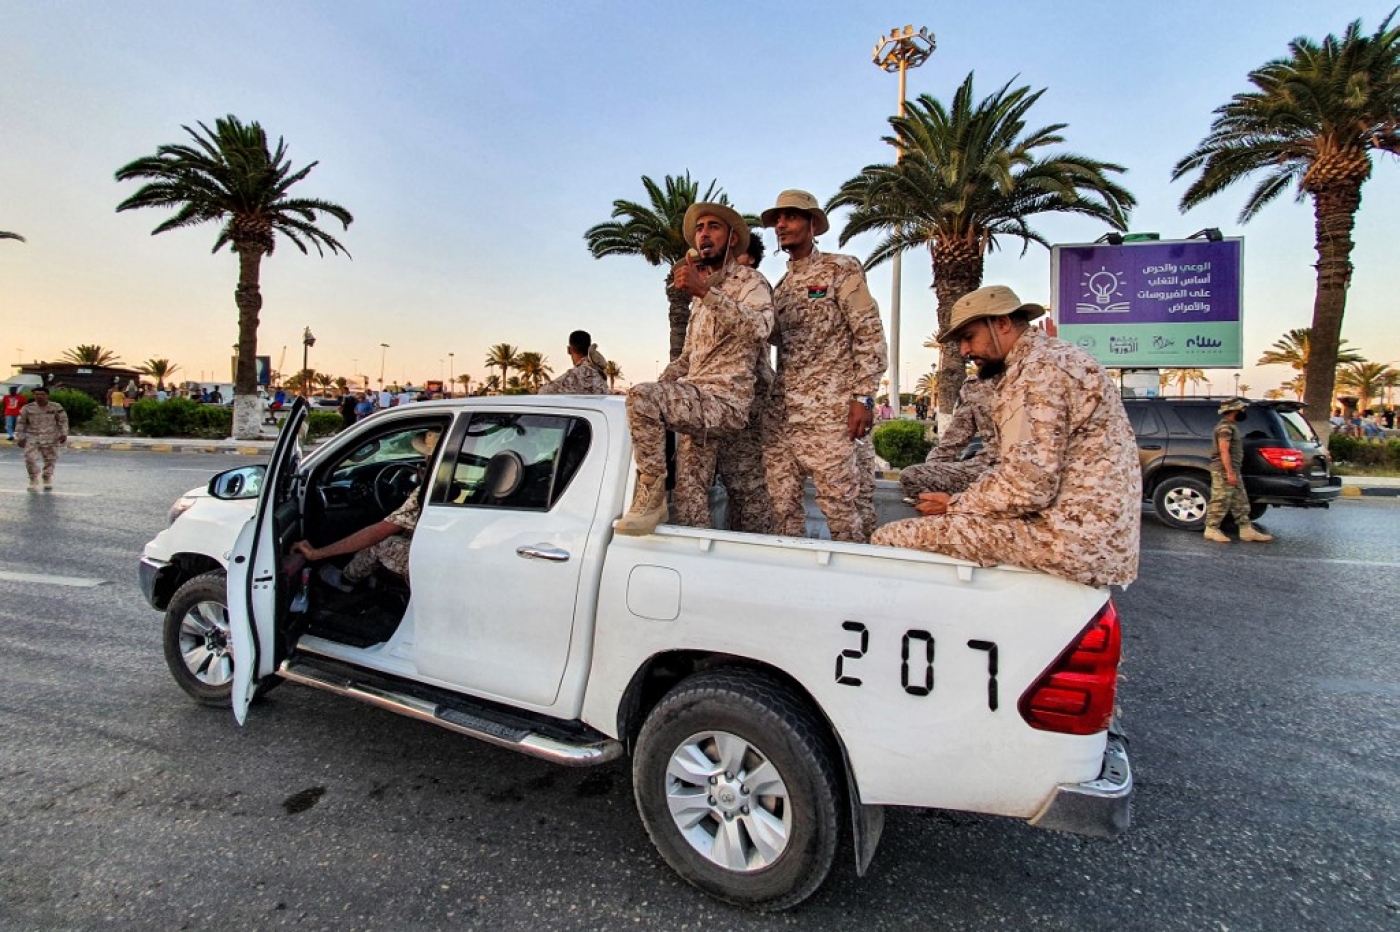 Des membres de la Brigade de Tripoli, une milice loyale au Gouvernement d’union nationale, paradent dans le centre de Tripoli (AFP/Mahmud Turkia)